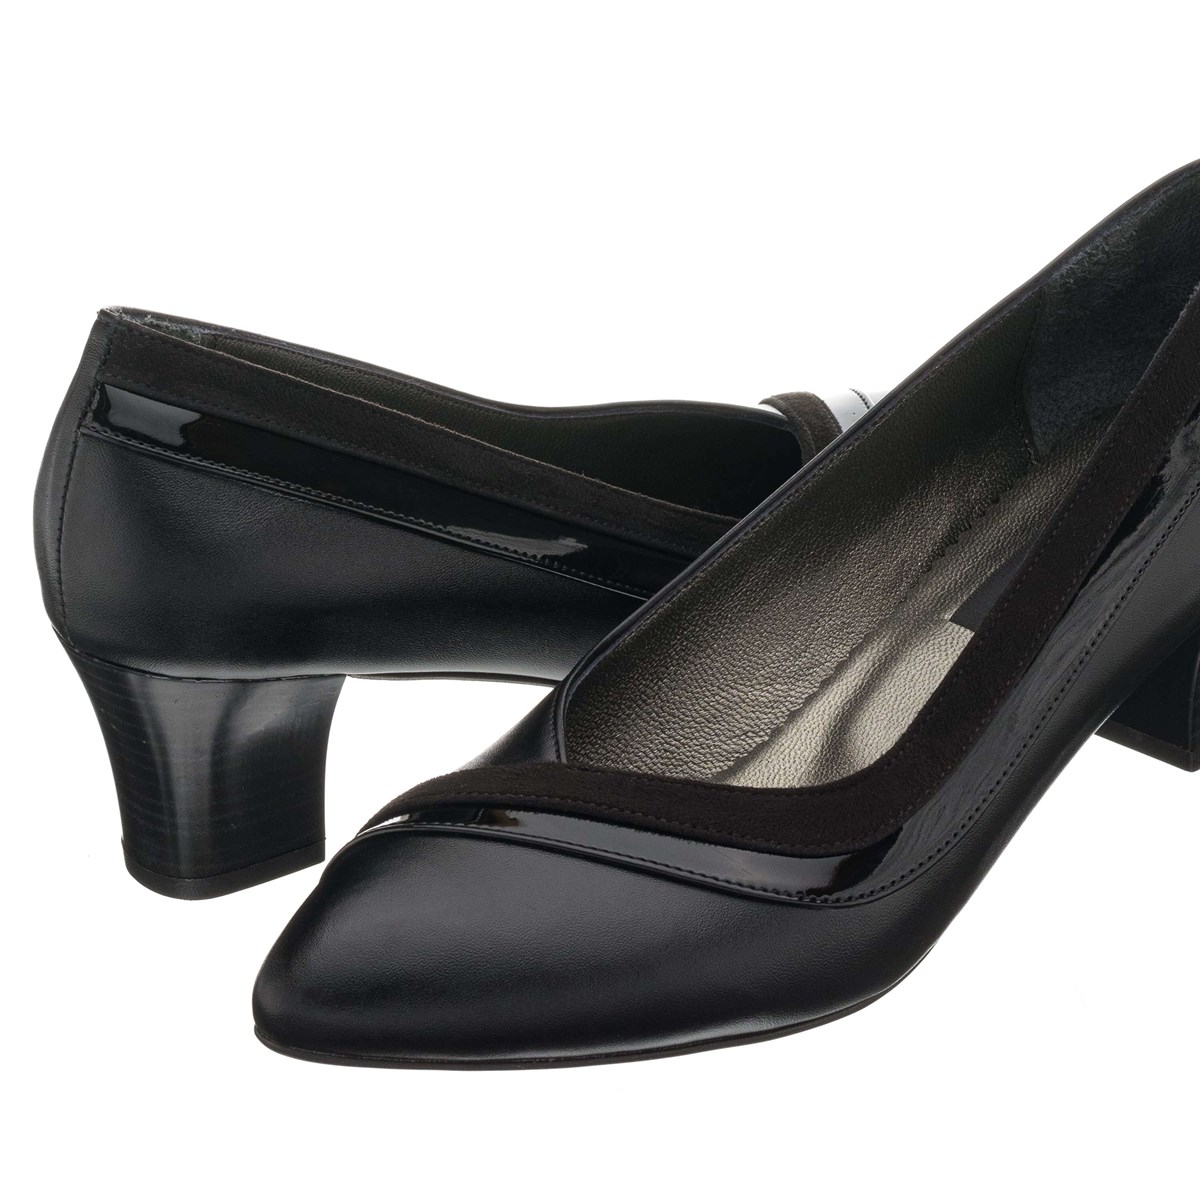 41,42,43,44 Numaralarda Siyah Estetik Derin Dekolteli Abiye Özel Deri Büyük  Numara Kadın Topuklu Ayakkabı